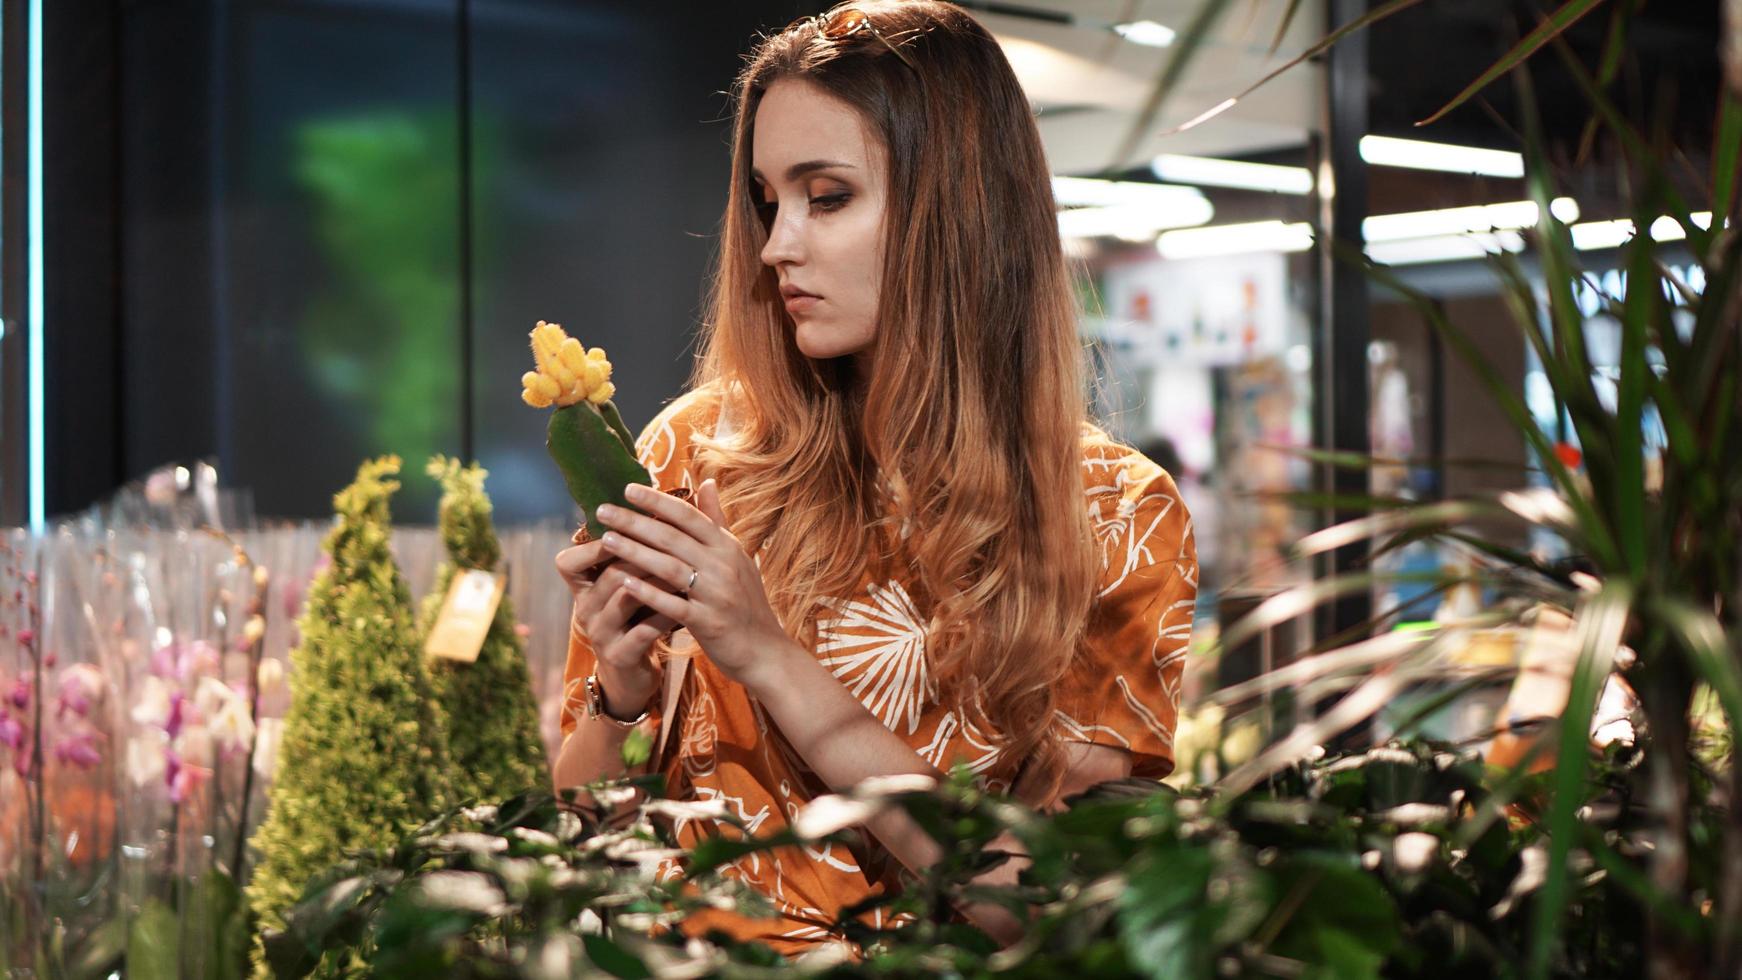 Jeune femme achetant des fleurs dans une jardinerie photo